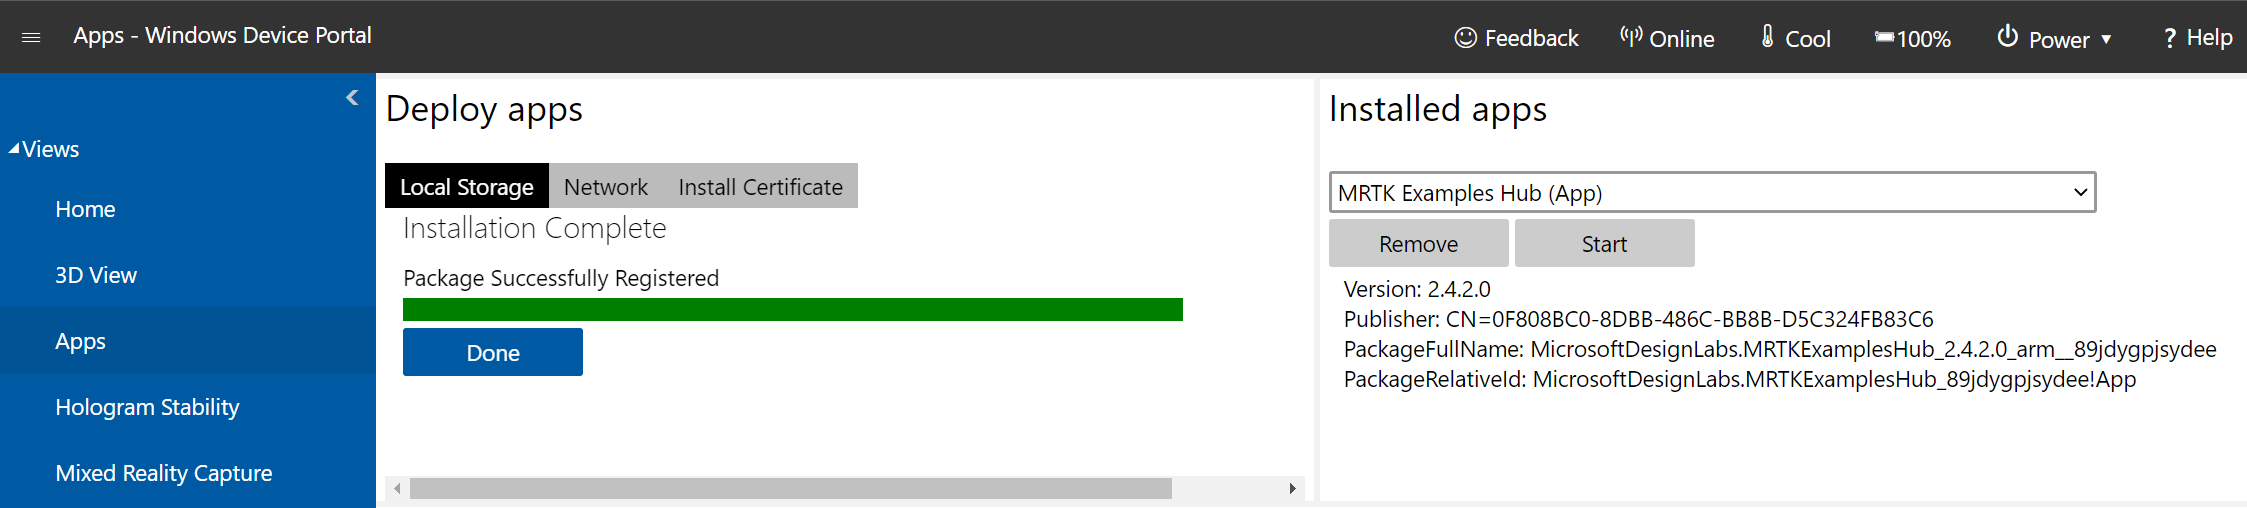 Schermopname van de pagina Apss-beheer die is geopend in de Windows-apparaatportal en de installatie is voltooid